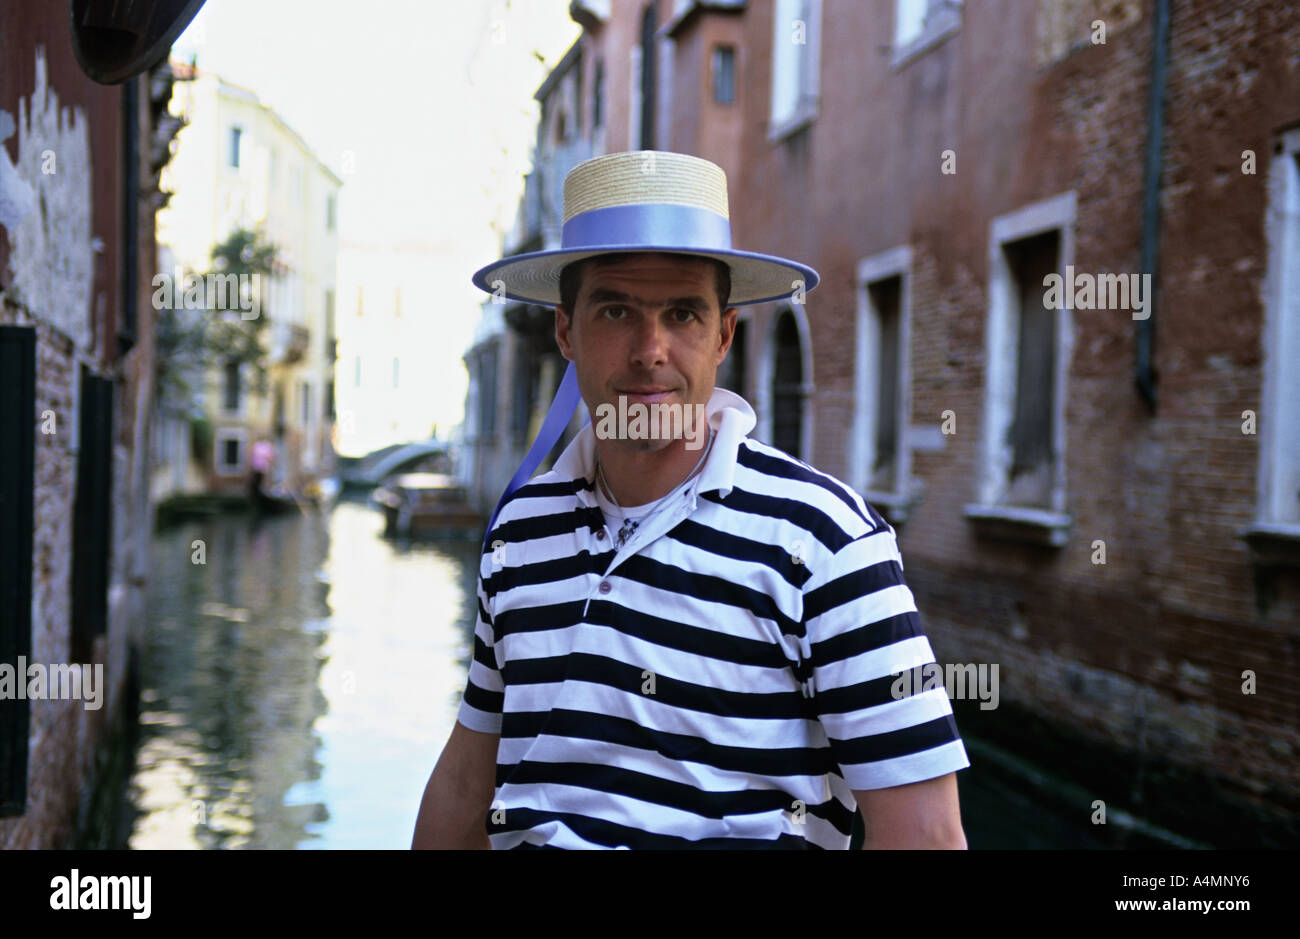 Venedig Italien Gondoliere im traditionellen Kostüm von Bändern Stroh Hut  und gestreifte Weste Stockfotografie - Alamy